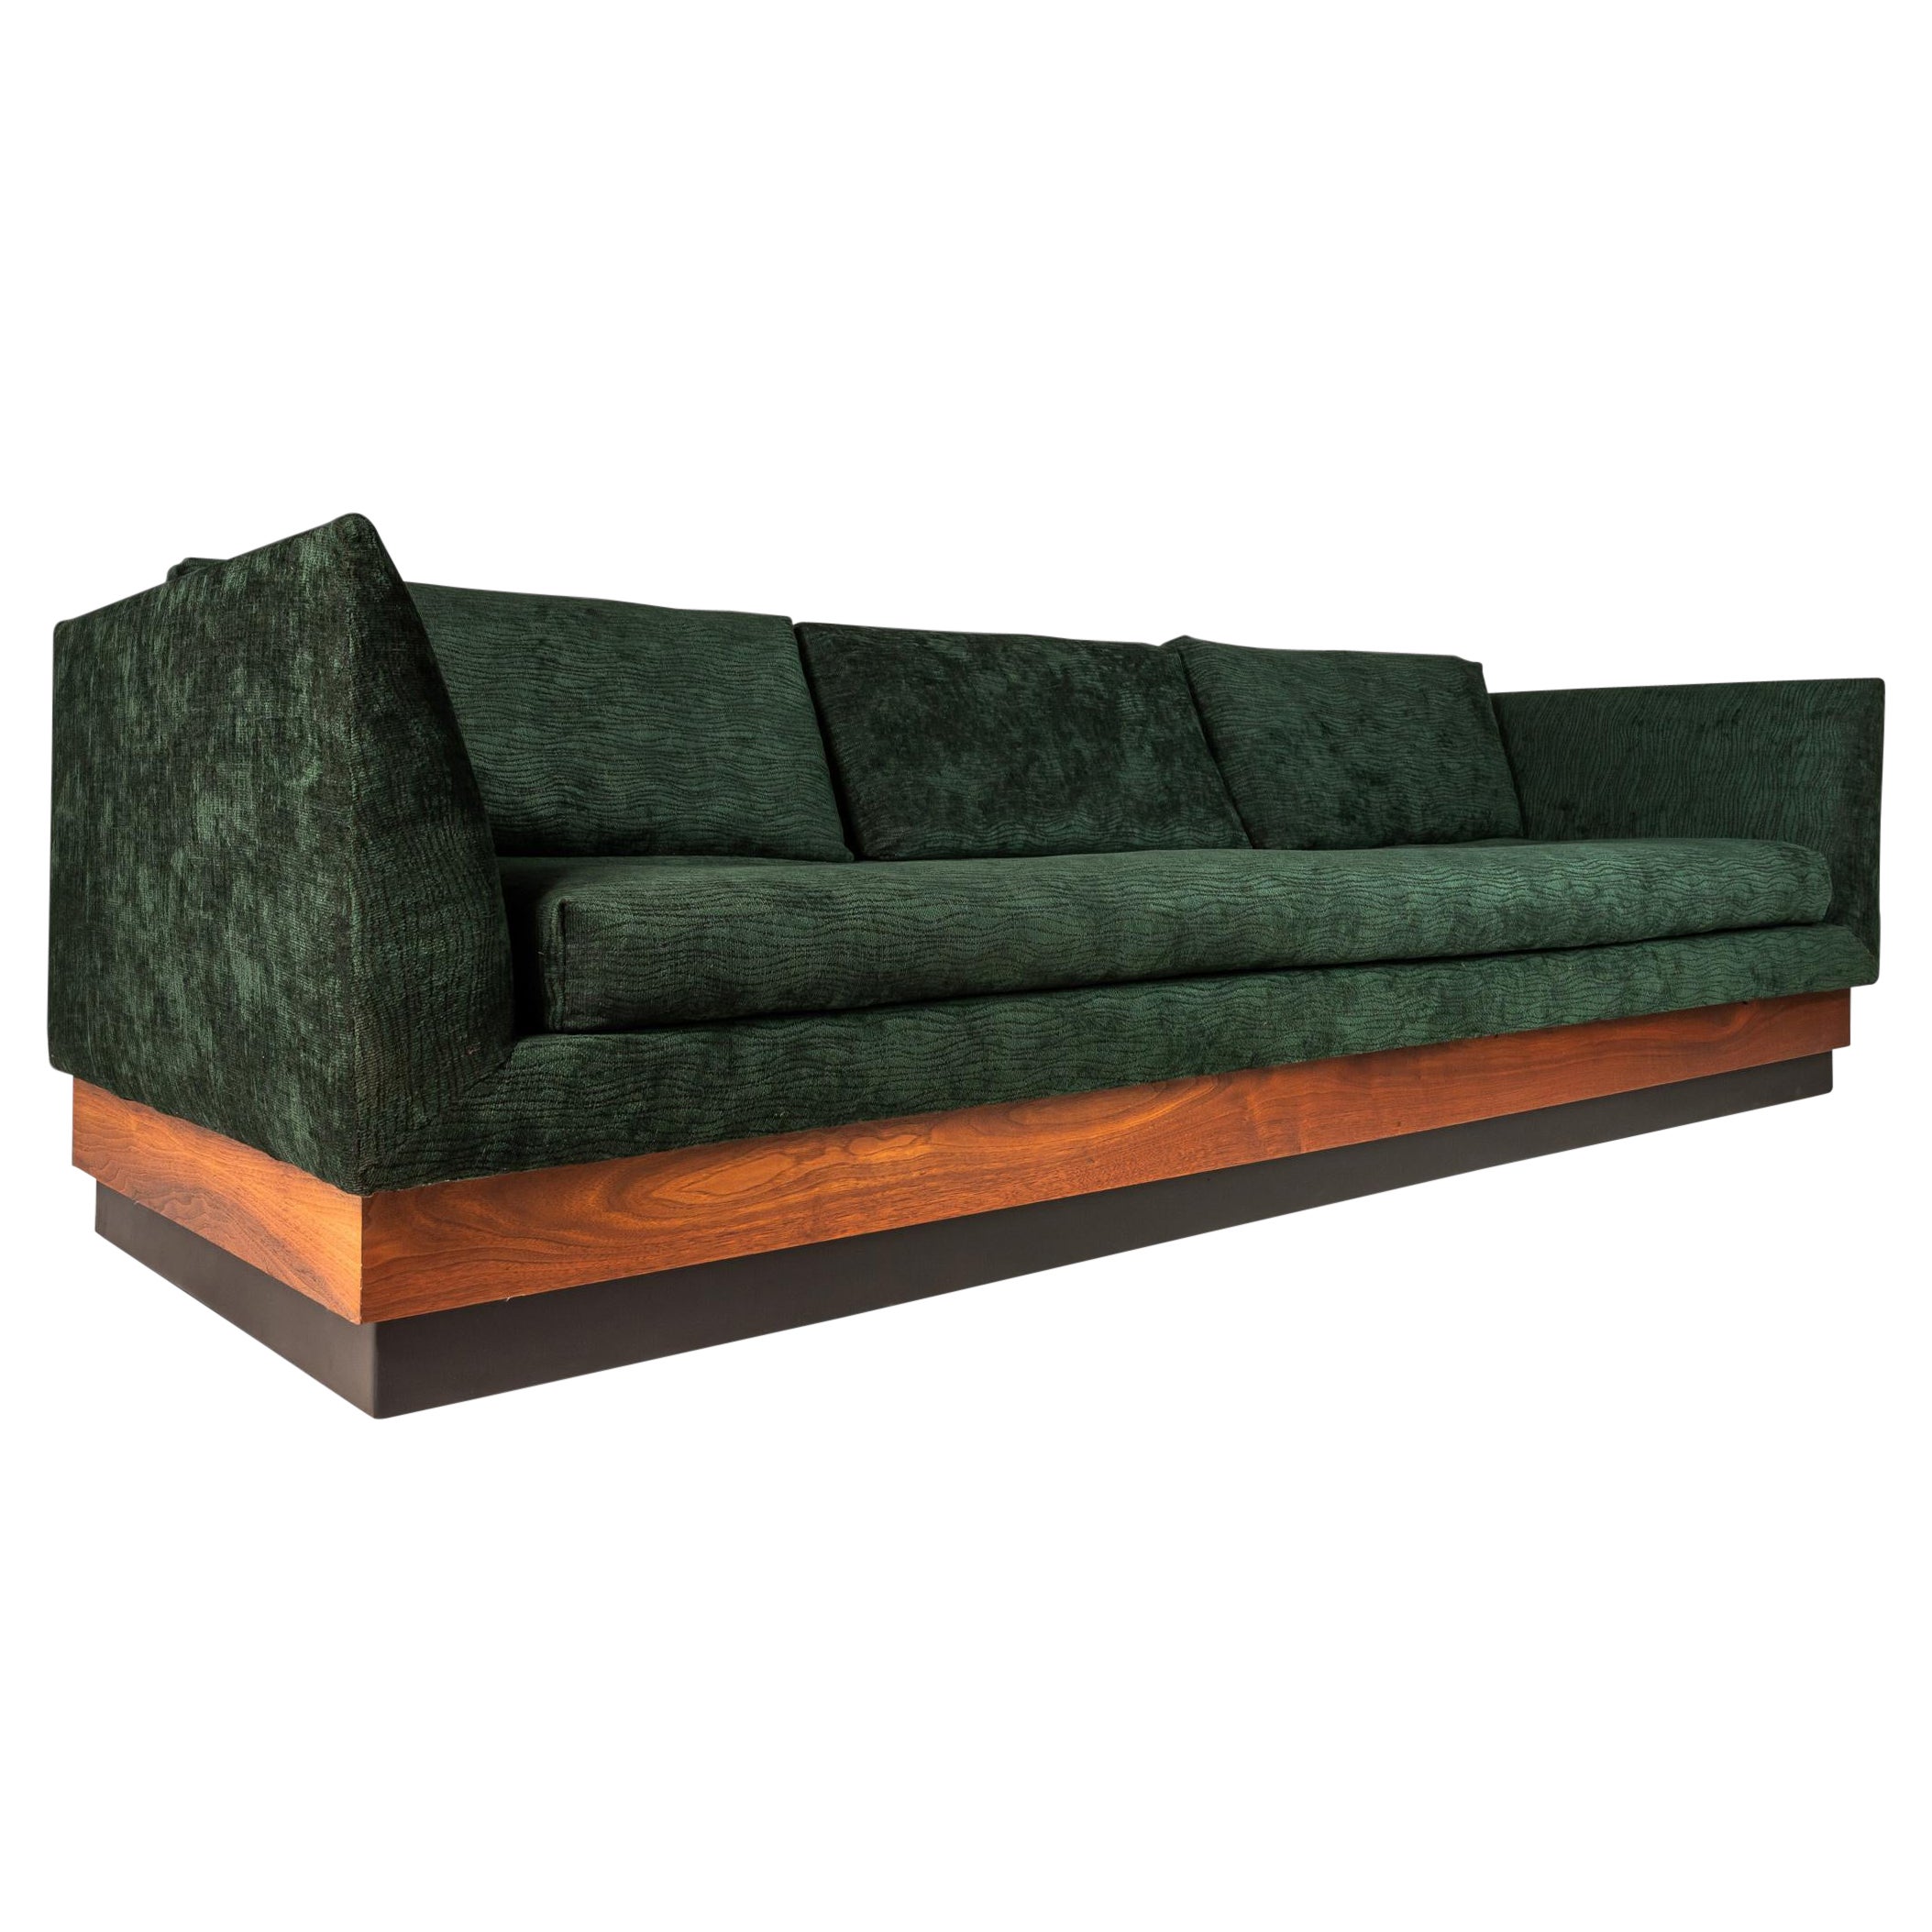 MCM Plateau-Sofa aus Nussbaumholz von Adrian Pearsall für Craft Associates, ca. 1960er Jahre